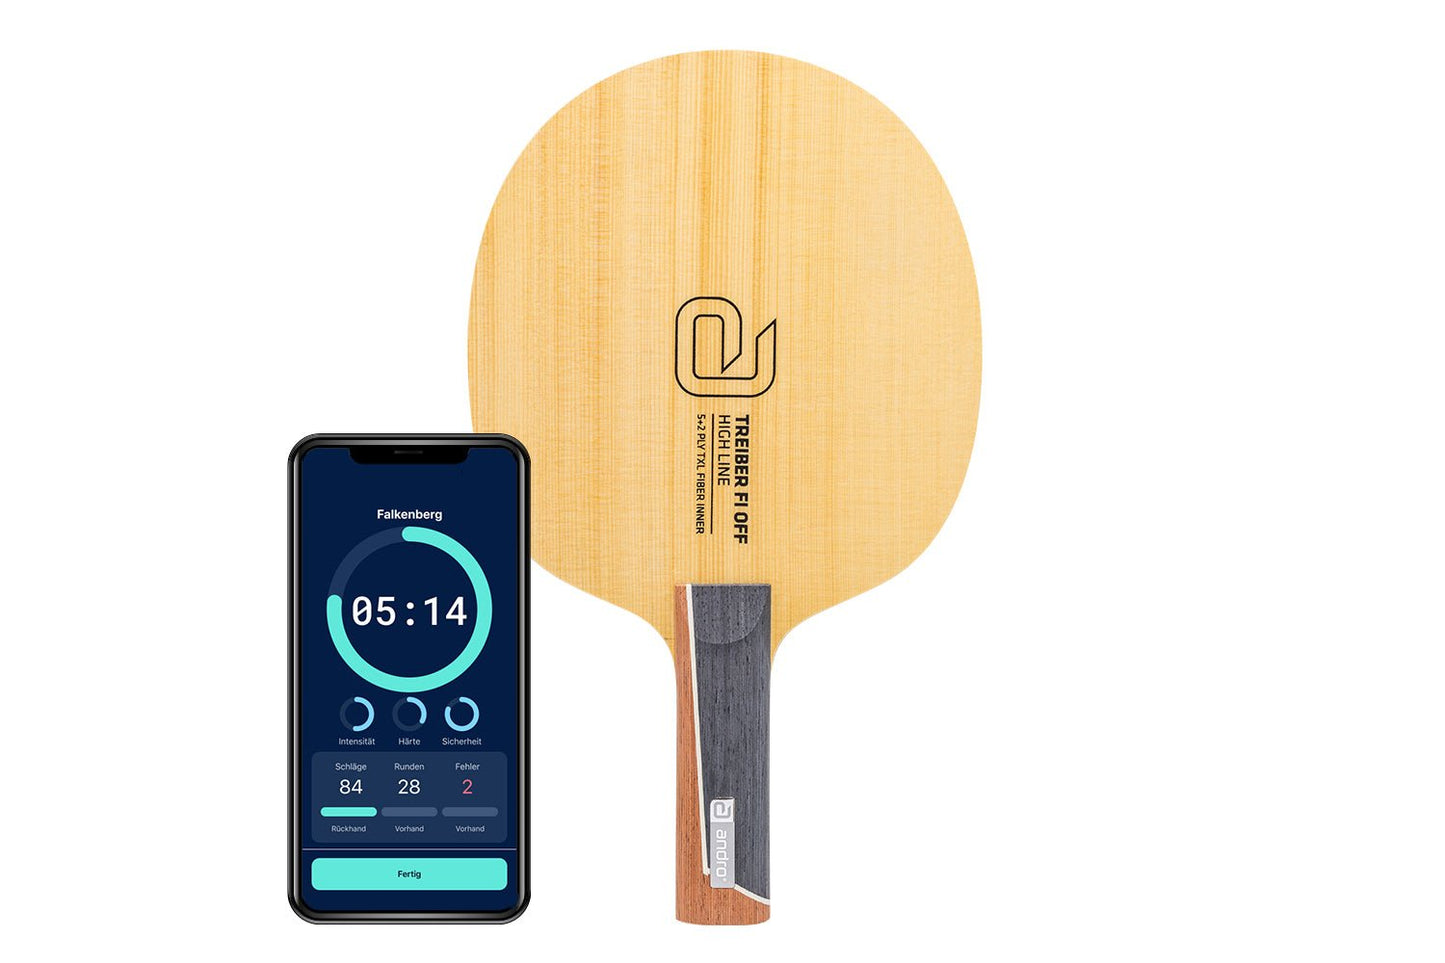 andro Treiber FI OFF Tischtennisschläger mit geradem Griff und Smartphone zeigt Daten des Schlägers vor weißem Hintergrund